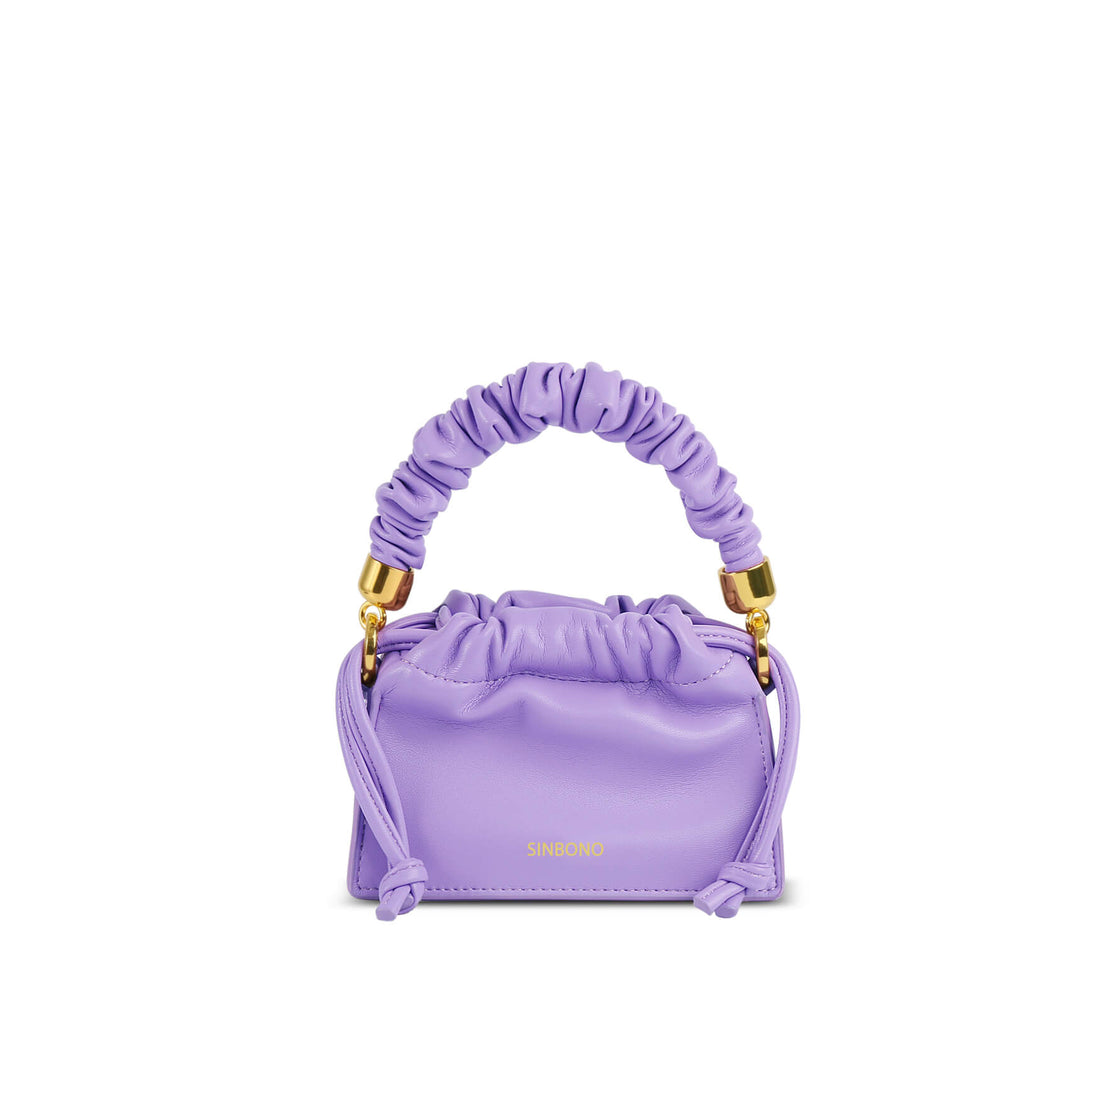 SINBONO Mini Drawstring Vegan Handbags Purple